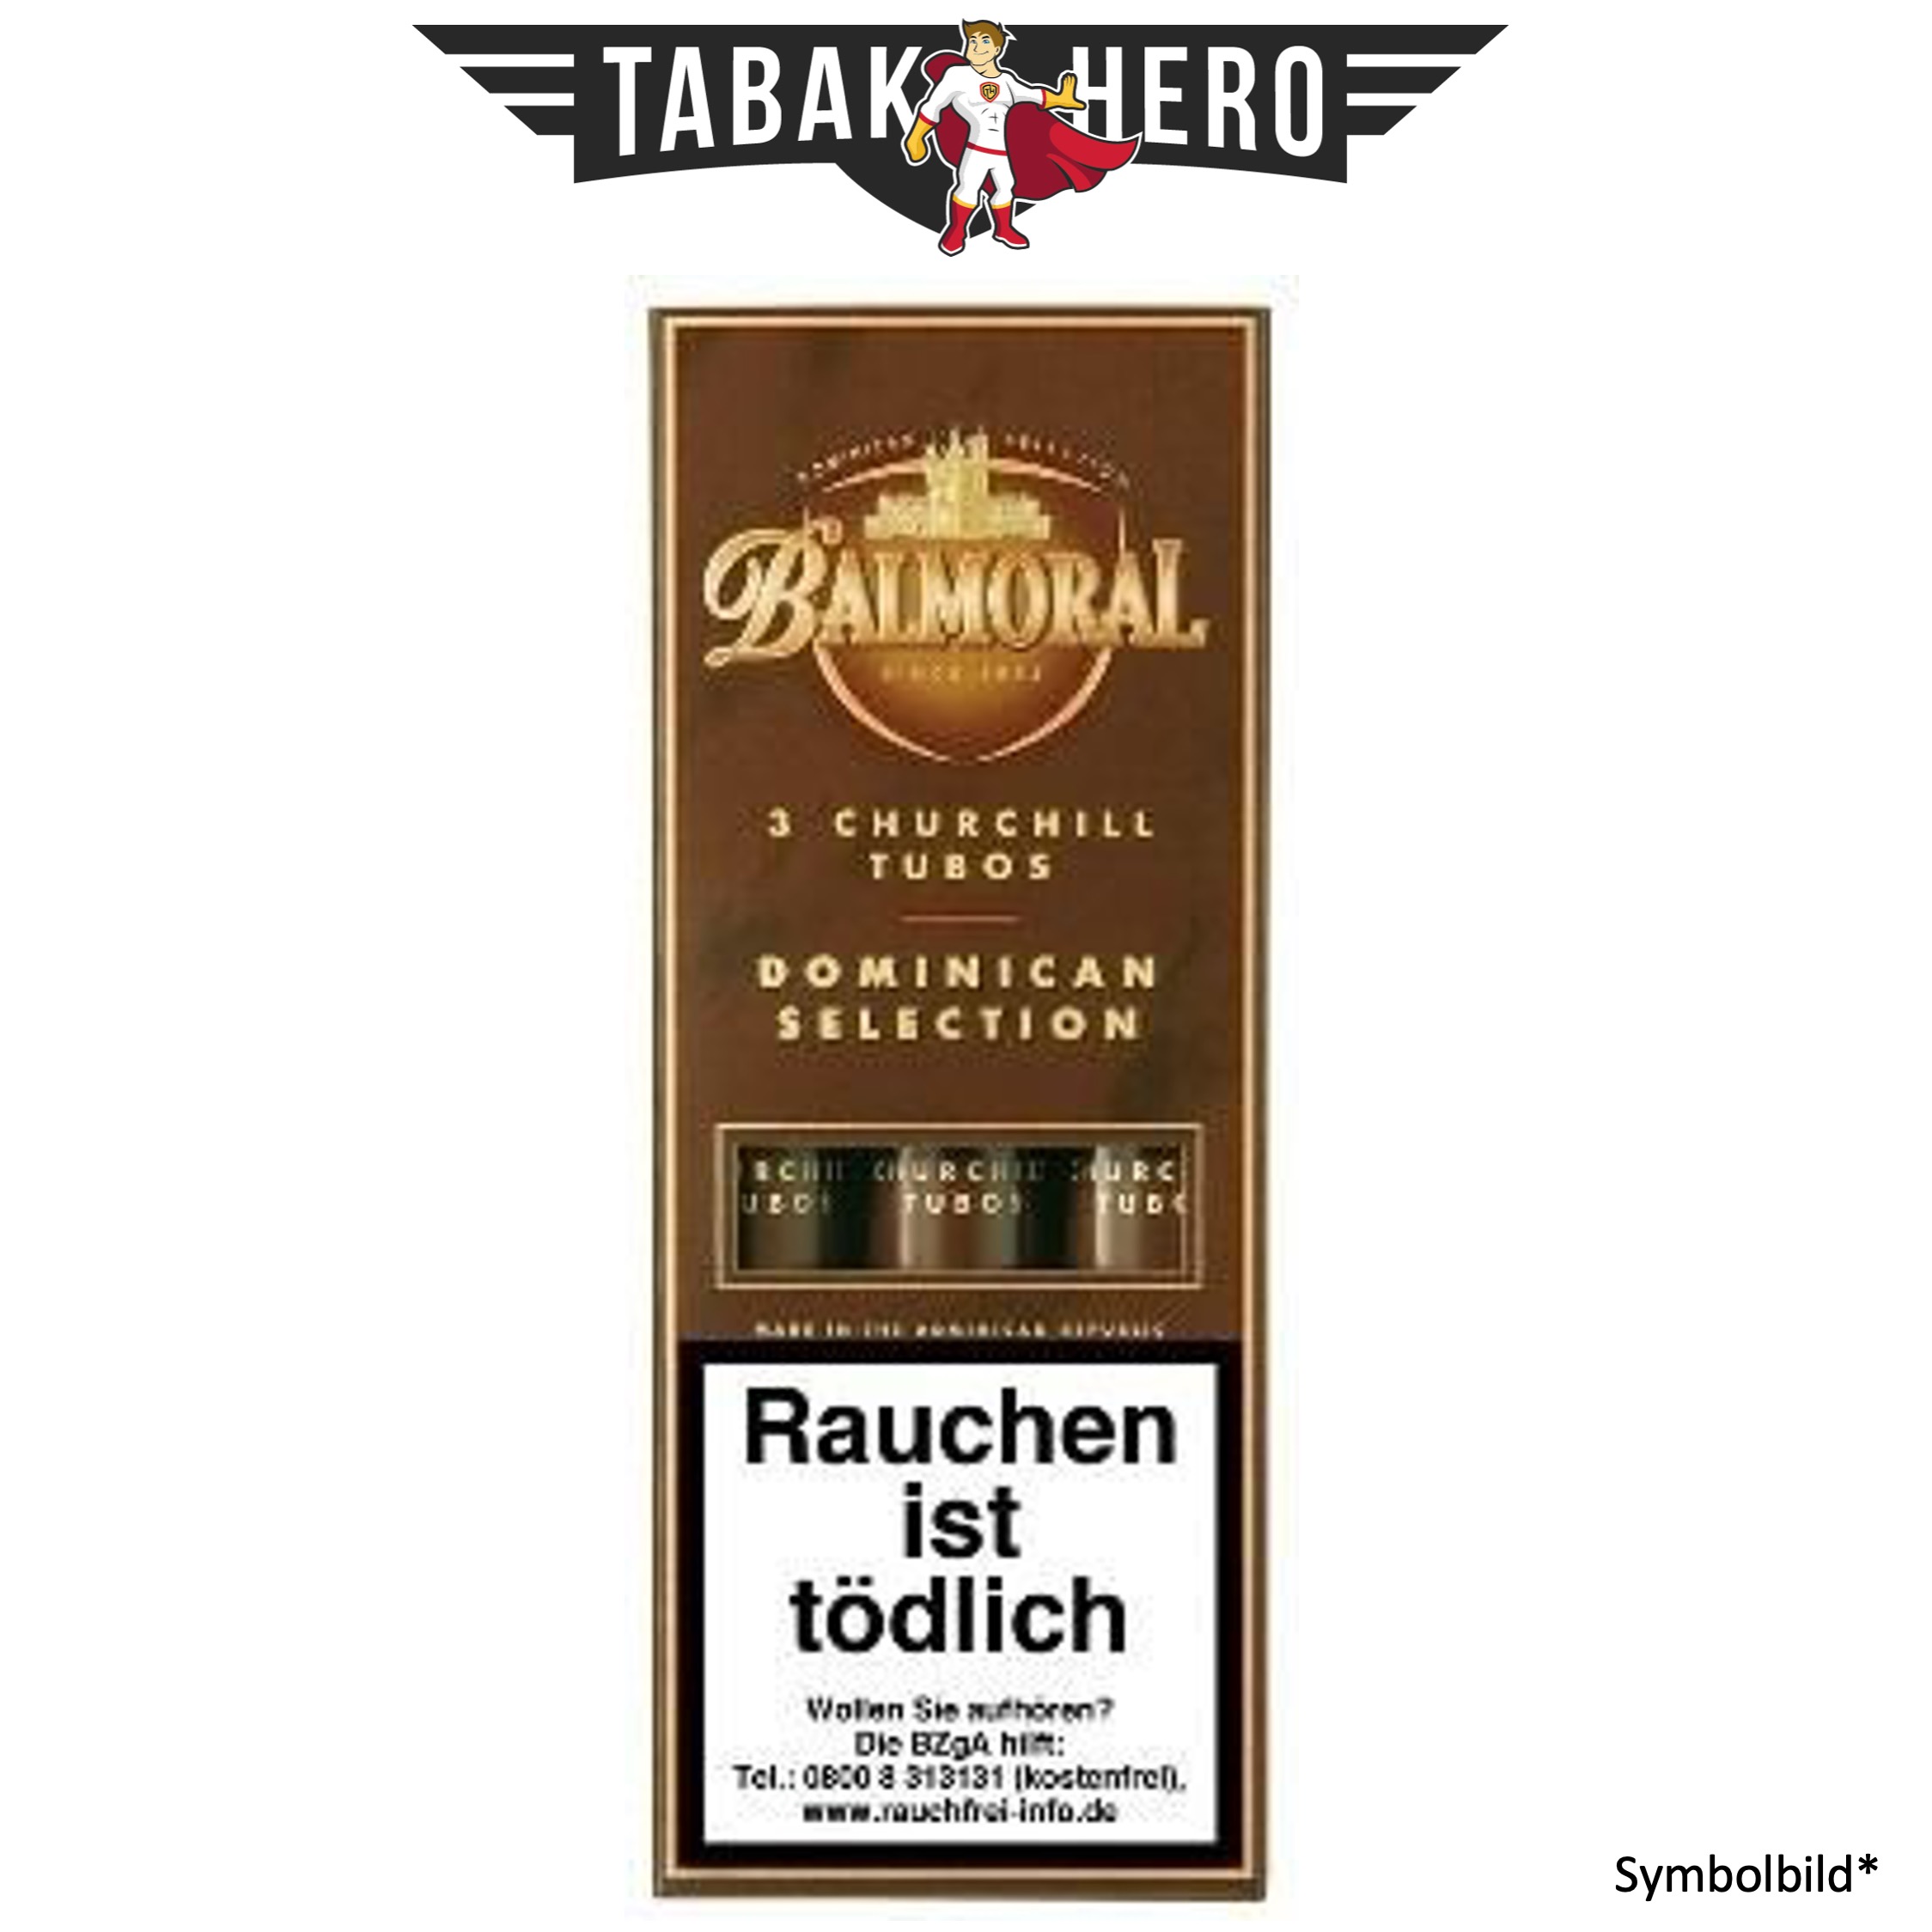 Balmoral Dominican Selection Churchill Tubos (5x3 Zigarren)